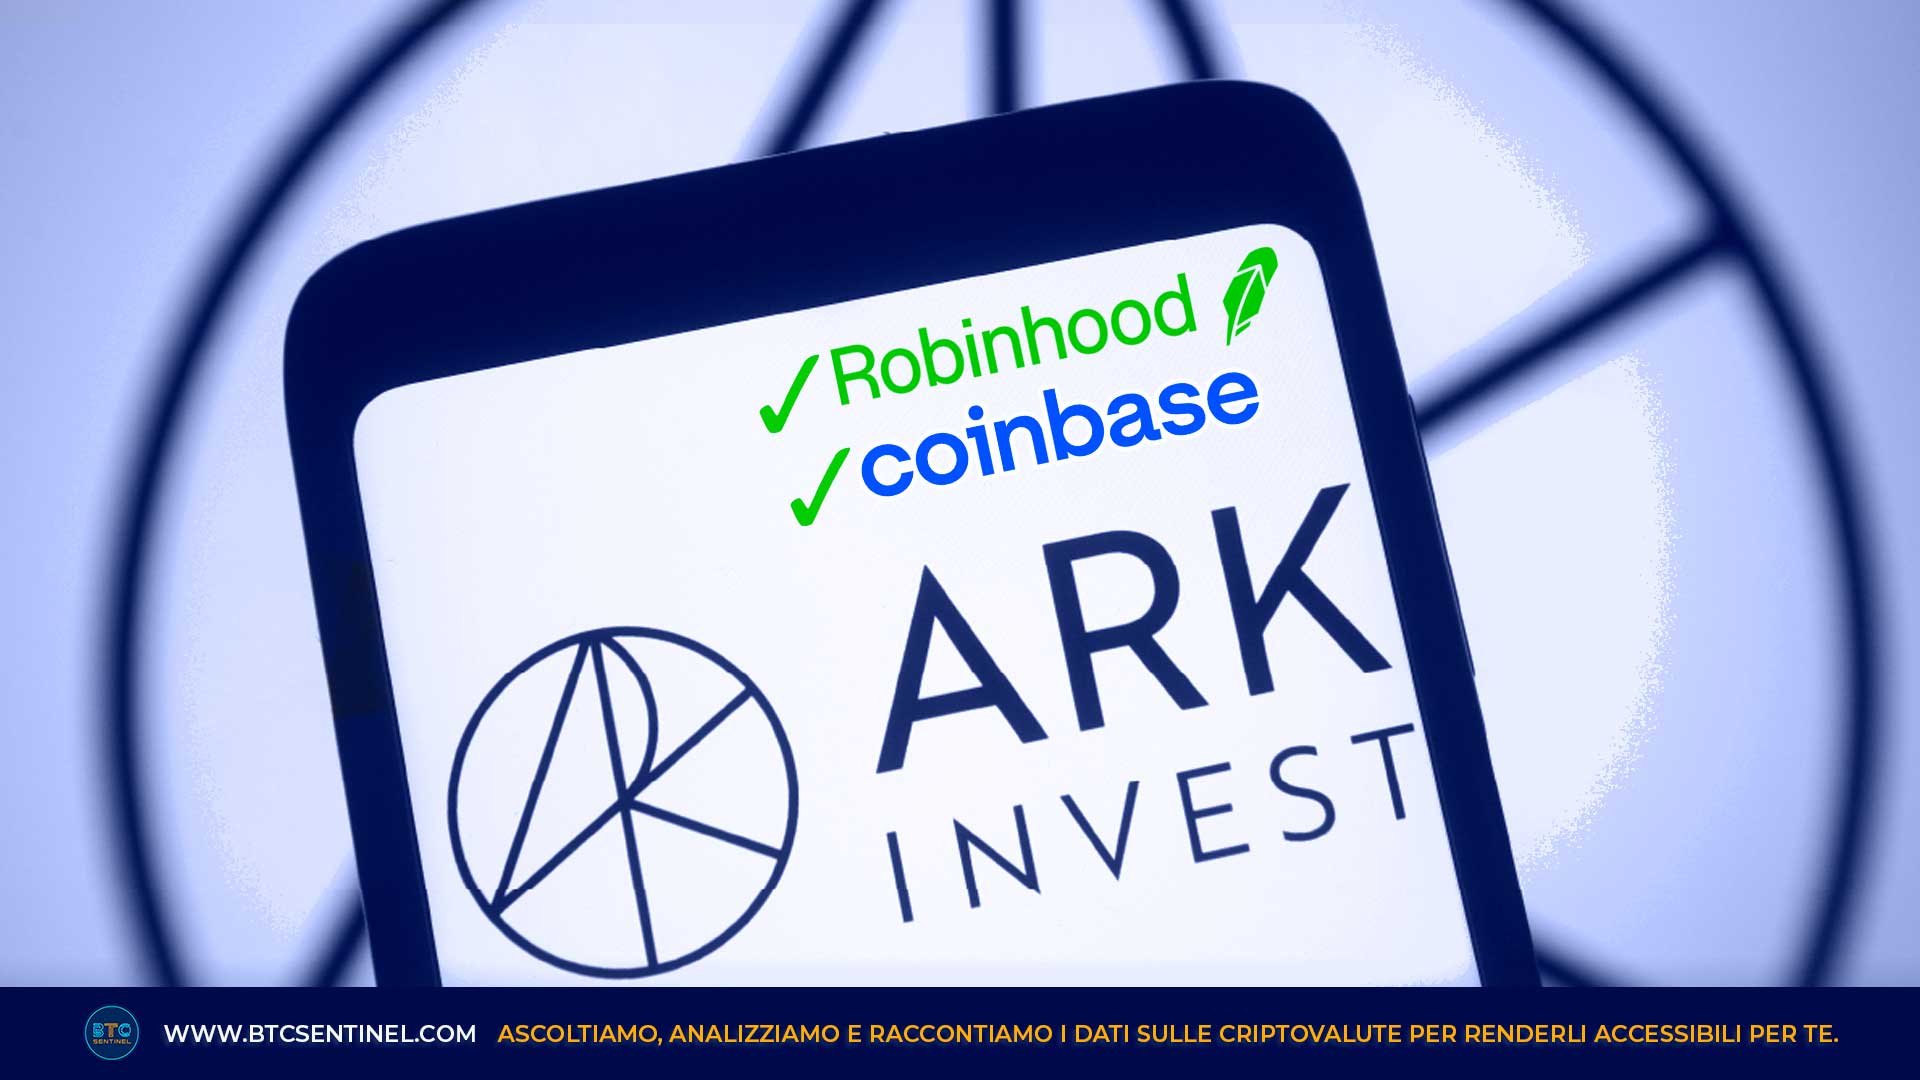 La Ark Invest acquista ancora azioni di Coinbase e Robinhood